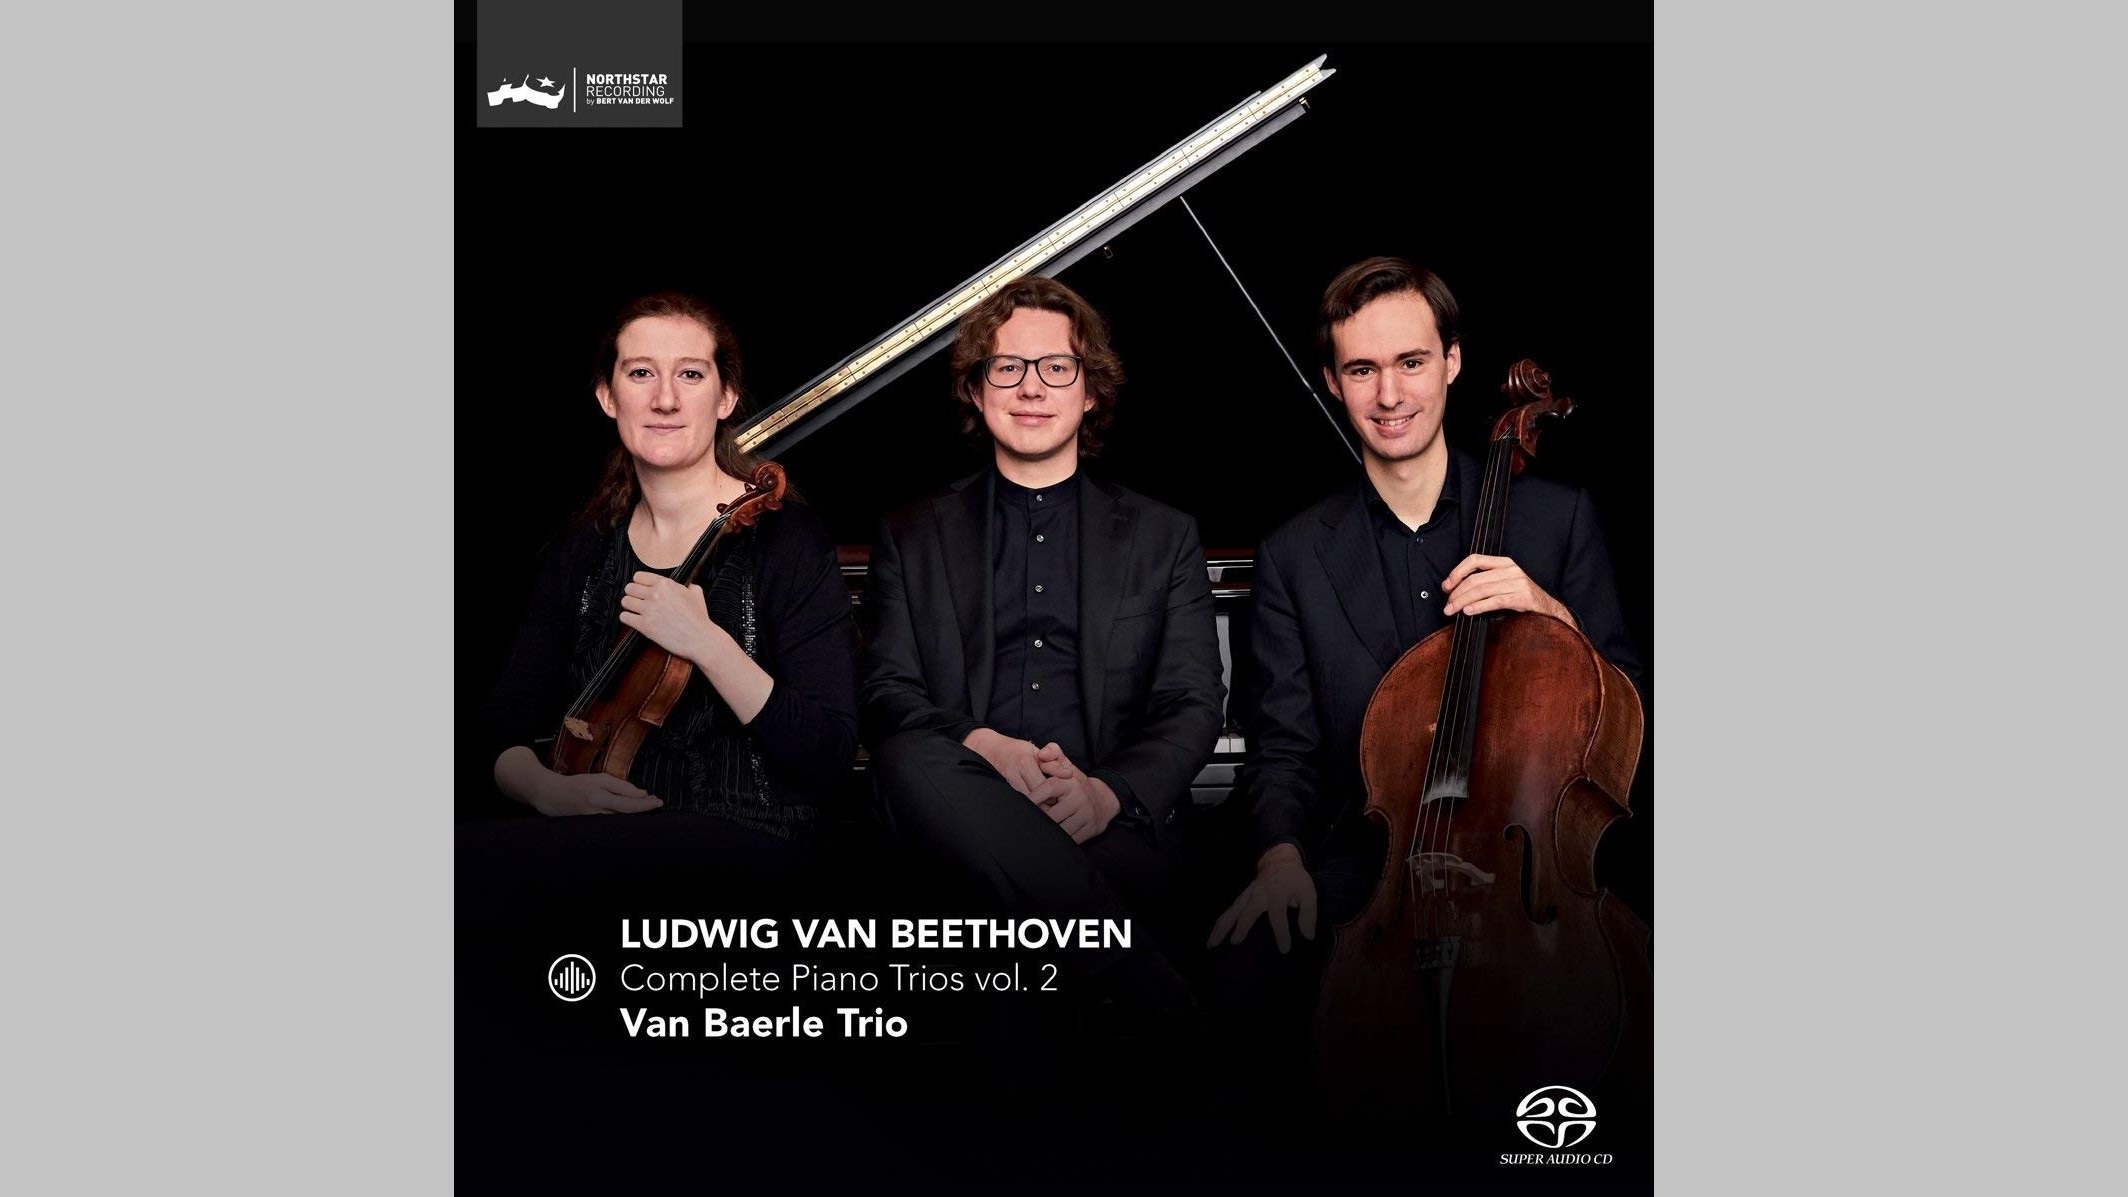 Van Baerle Trio